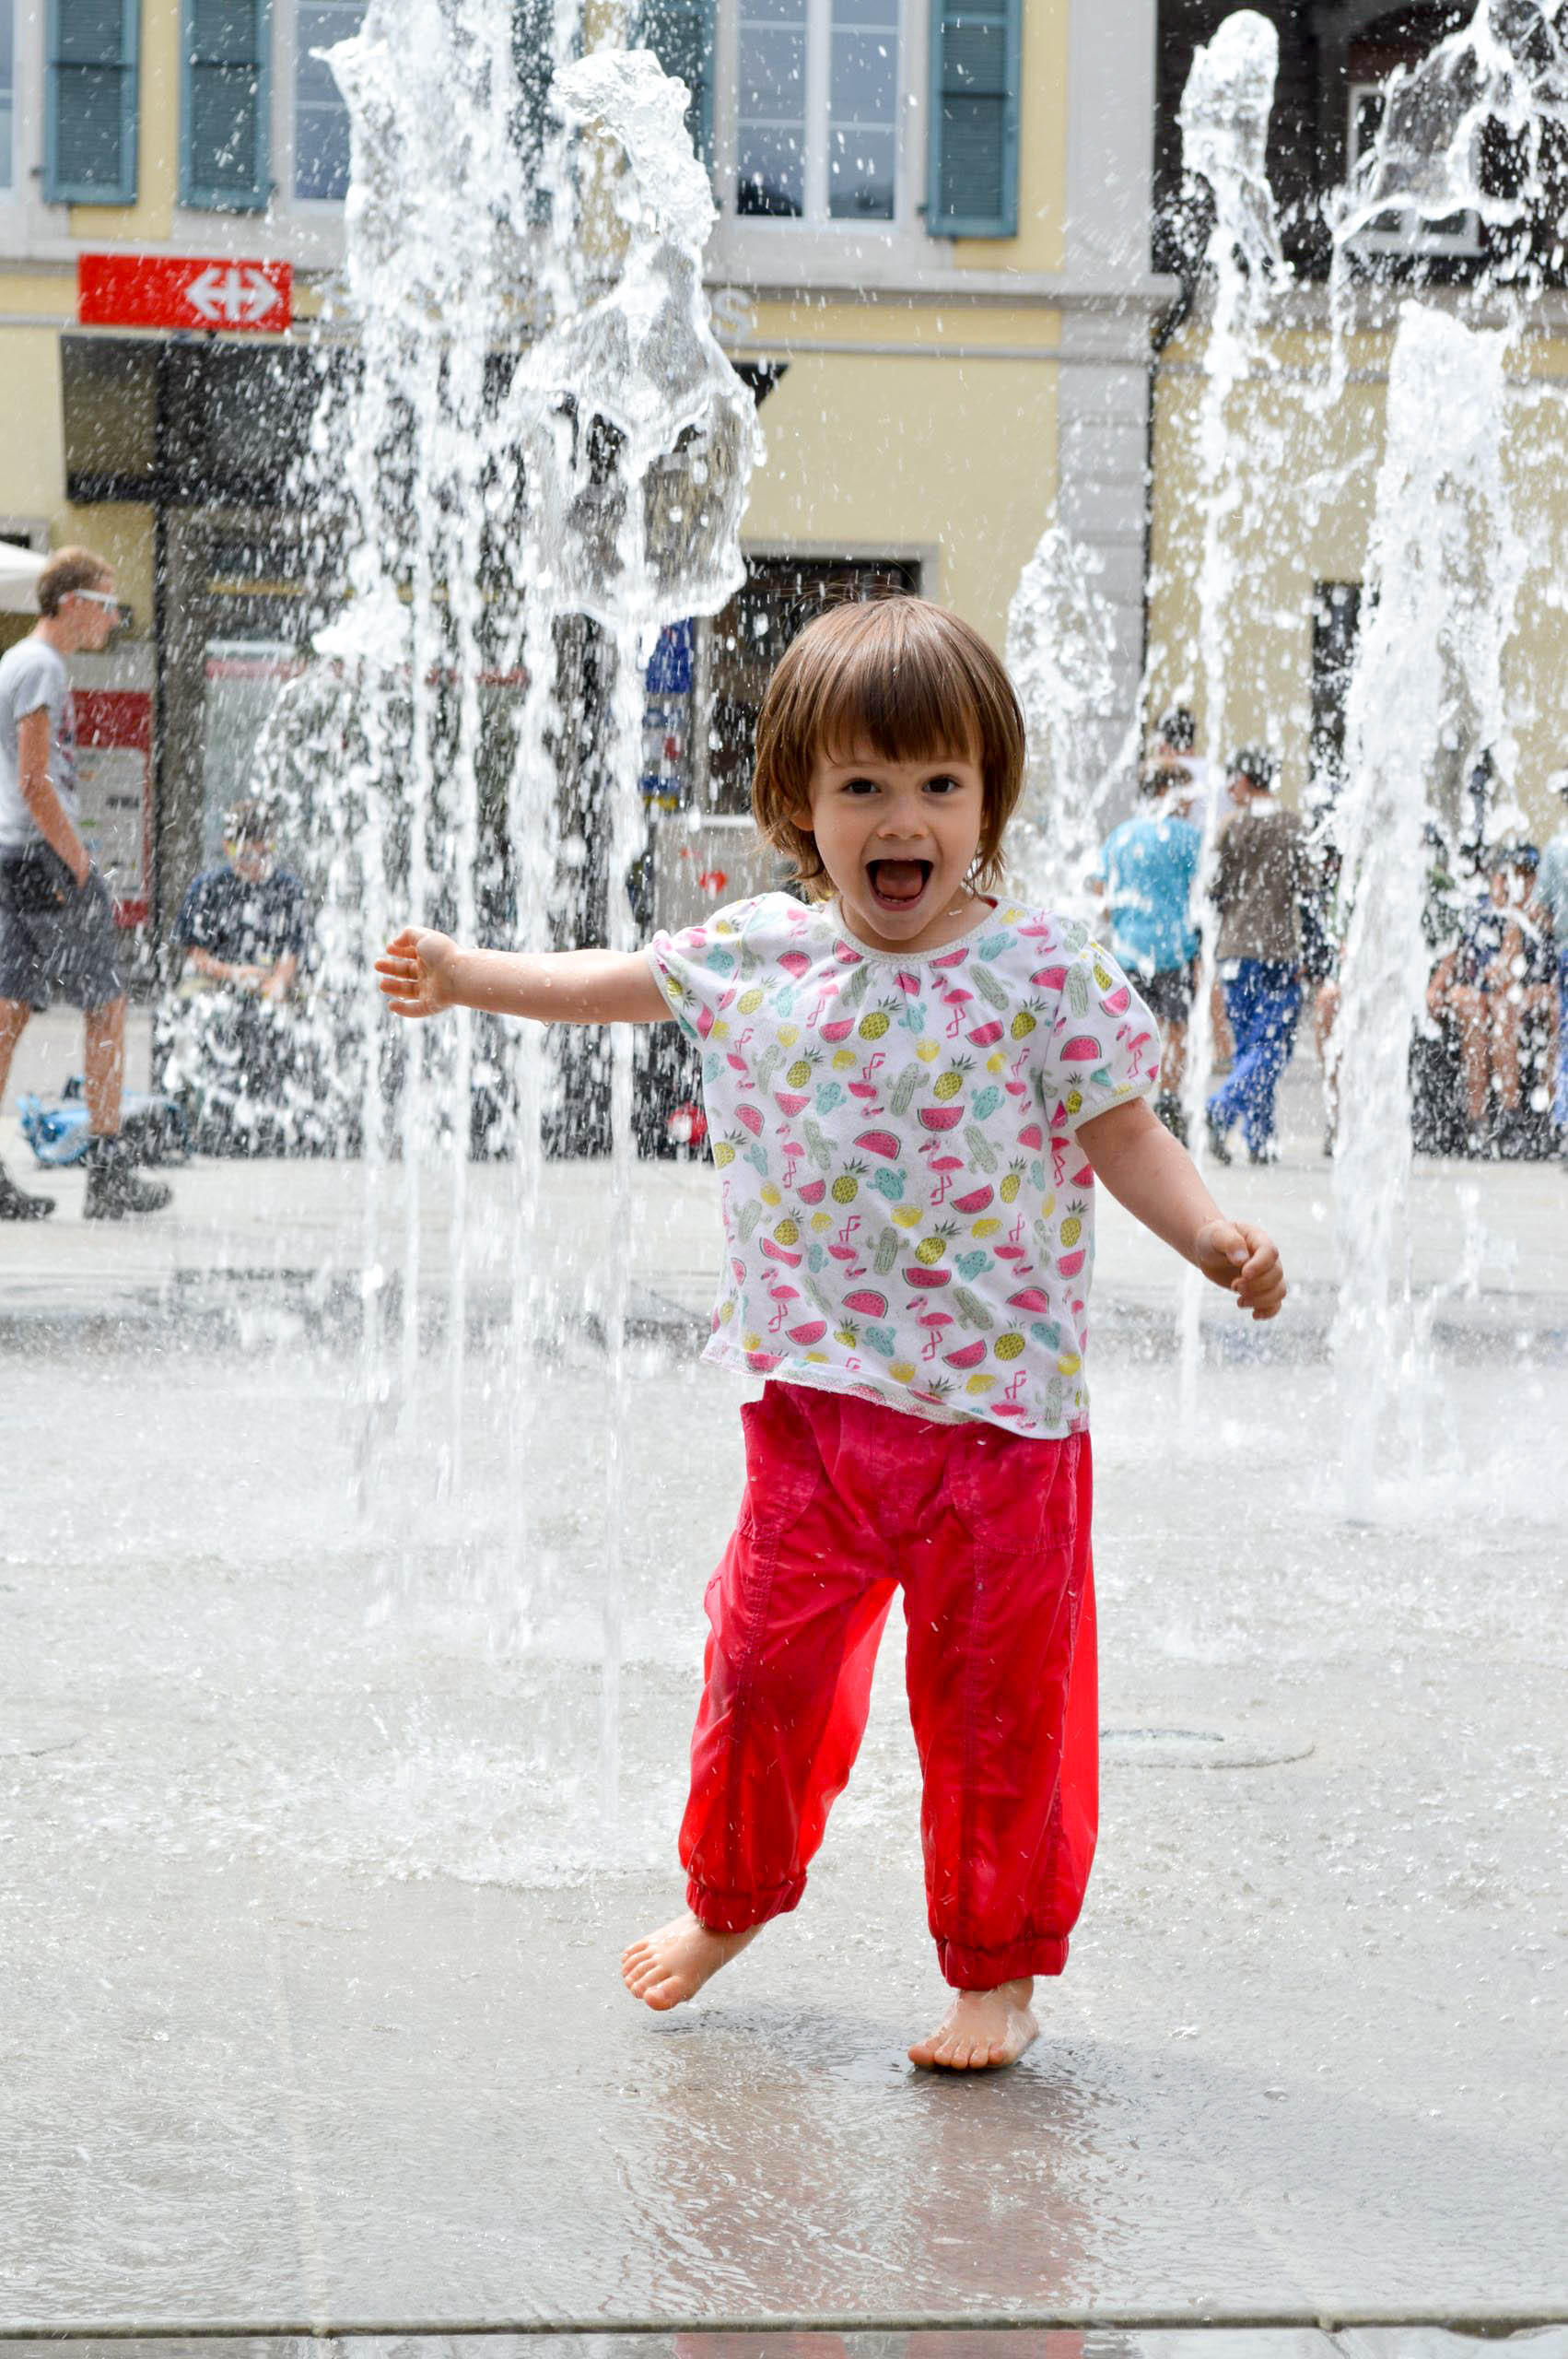 Ein lachendes Kind rennt vor den Wasserfontänen davon